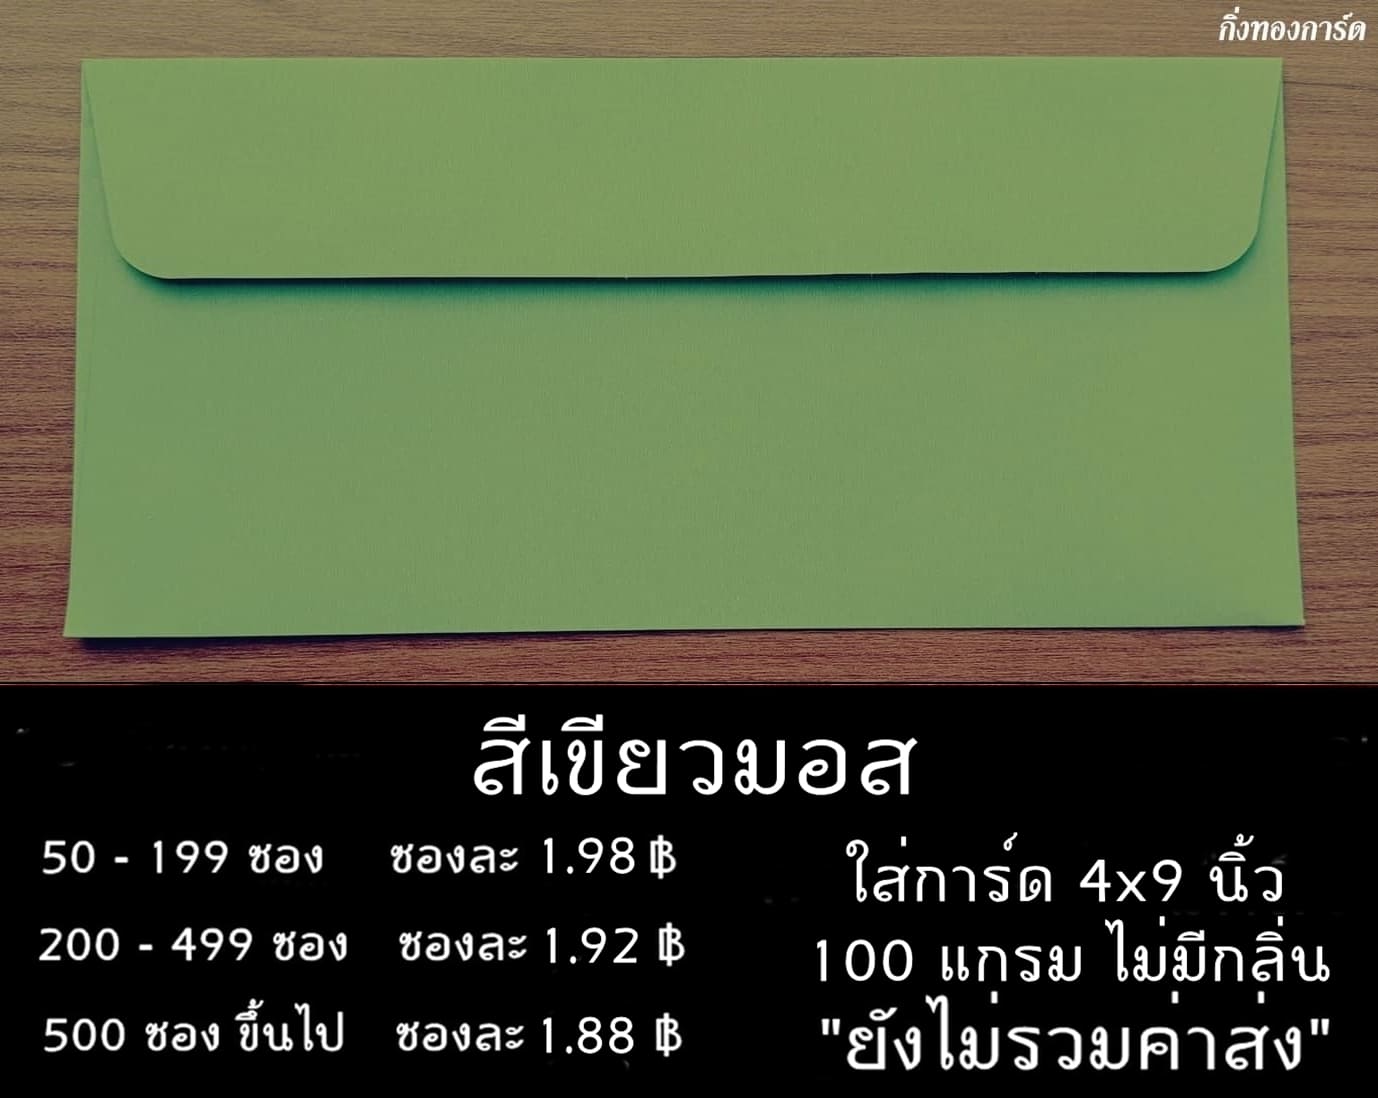 ซองเบอร์ 9 สีเขียวมอส ใส่การ์ด 4x9 นิ้ว ซองหนา 100 แกรม ไม่มีกลิ่น ผิวเรียบ 